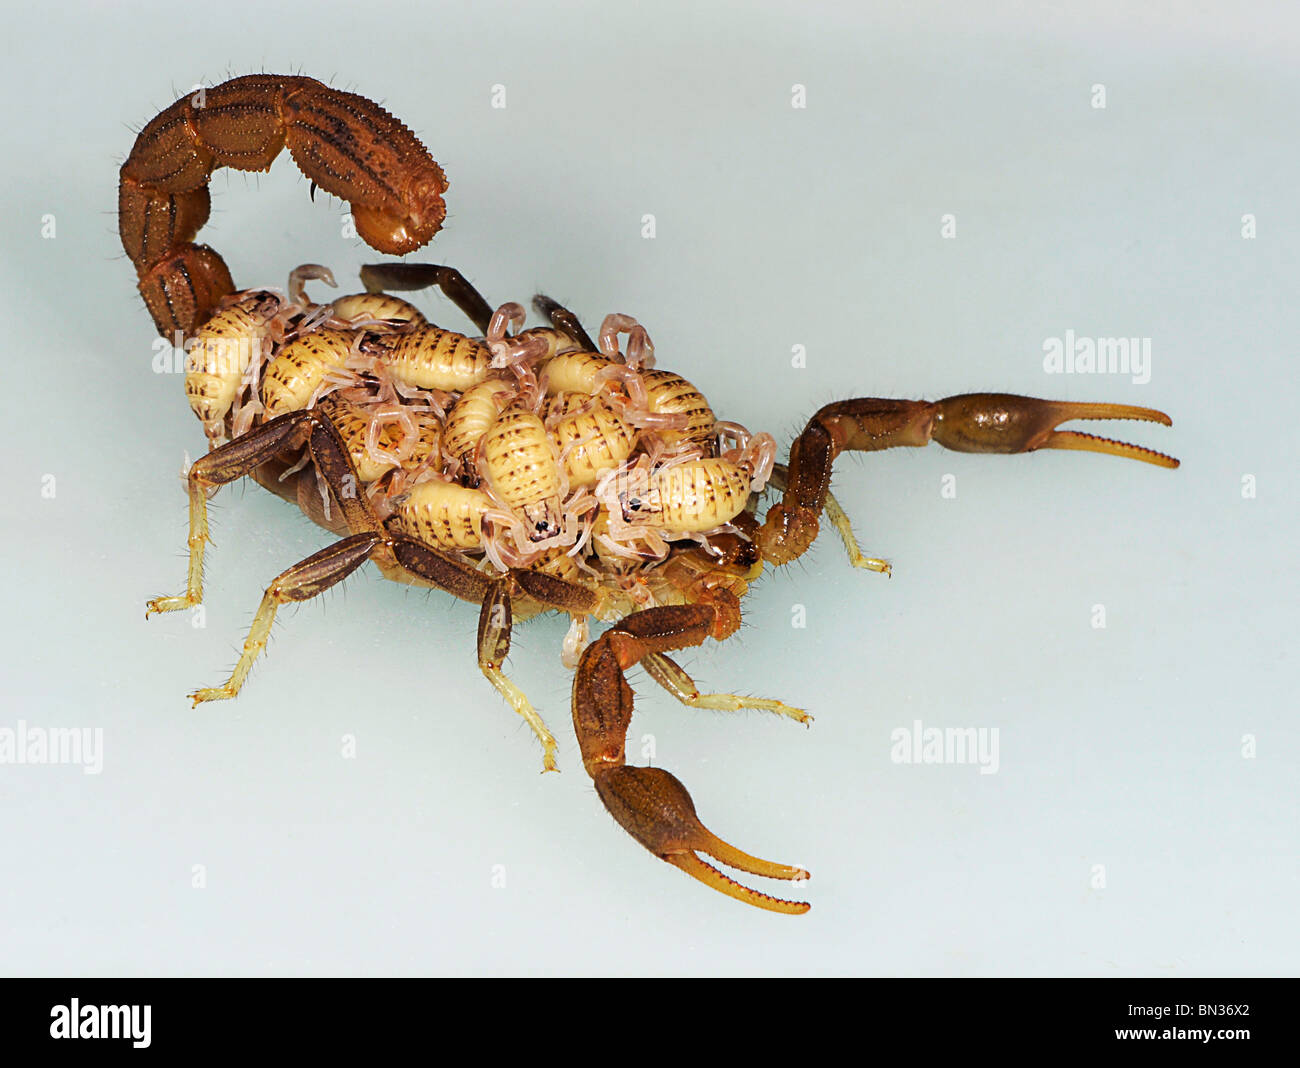 Hottentota scorpion, fotografato in Tanzania Africa porta la sua giovane sulla sua schiena, una funzione del suo comportamento materno. Foto Stock